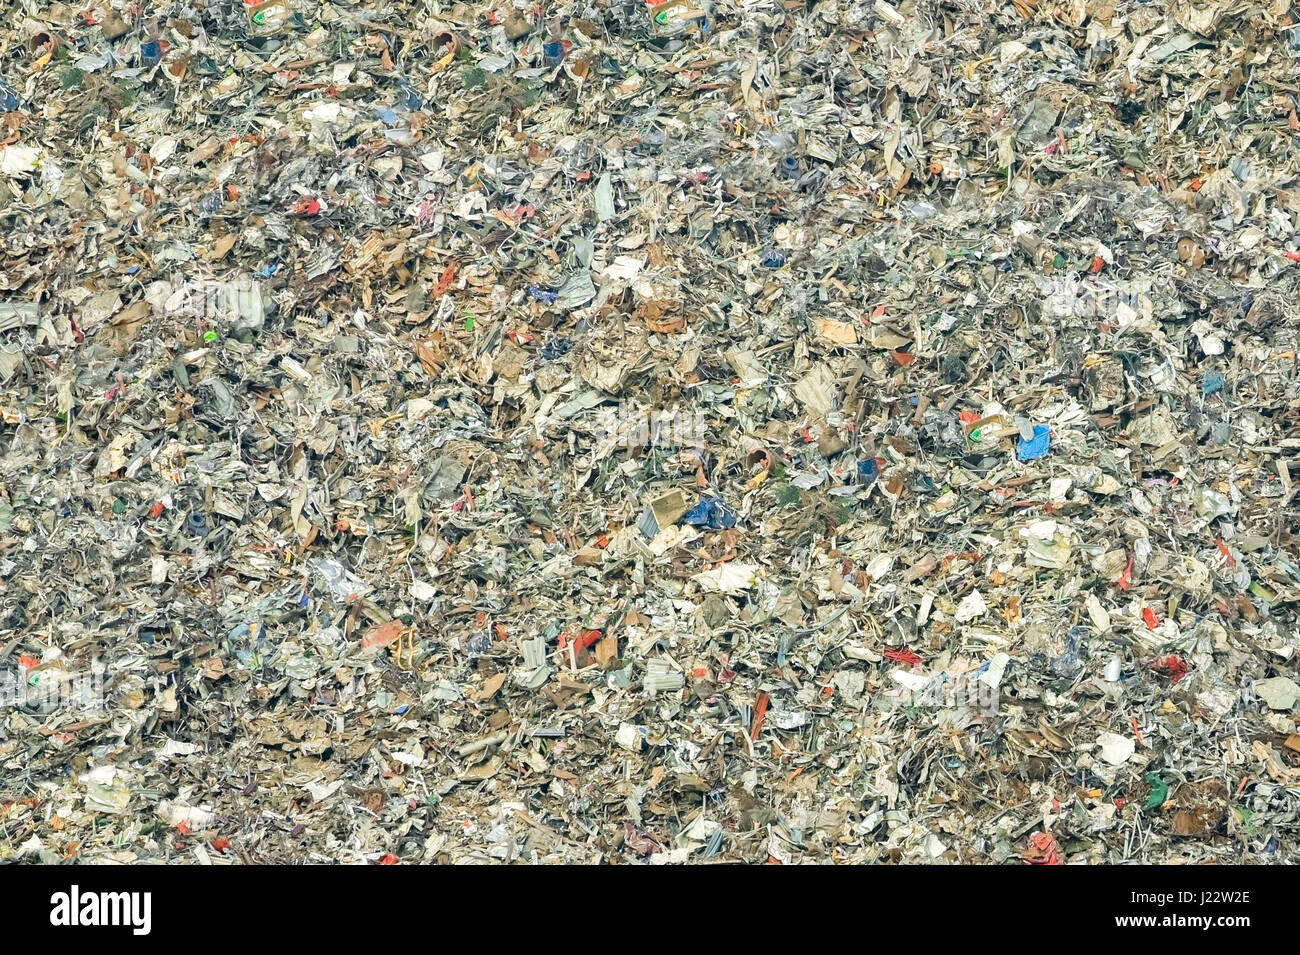 Enorme montón de vertederos de basura en descomposición - no hay marcas visibles Foto de stock